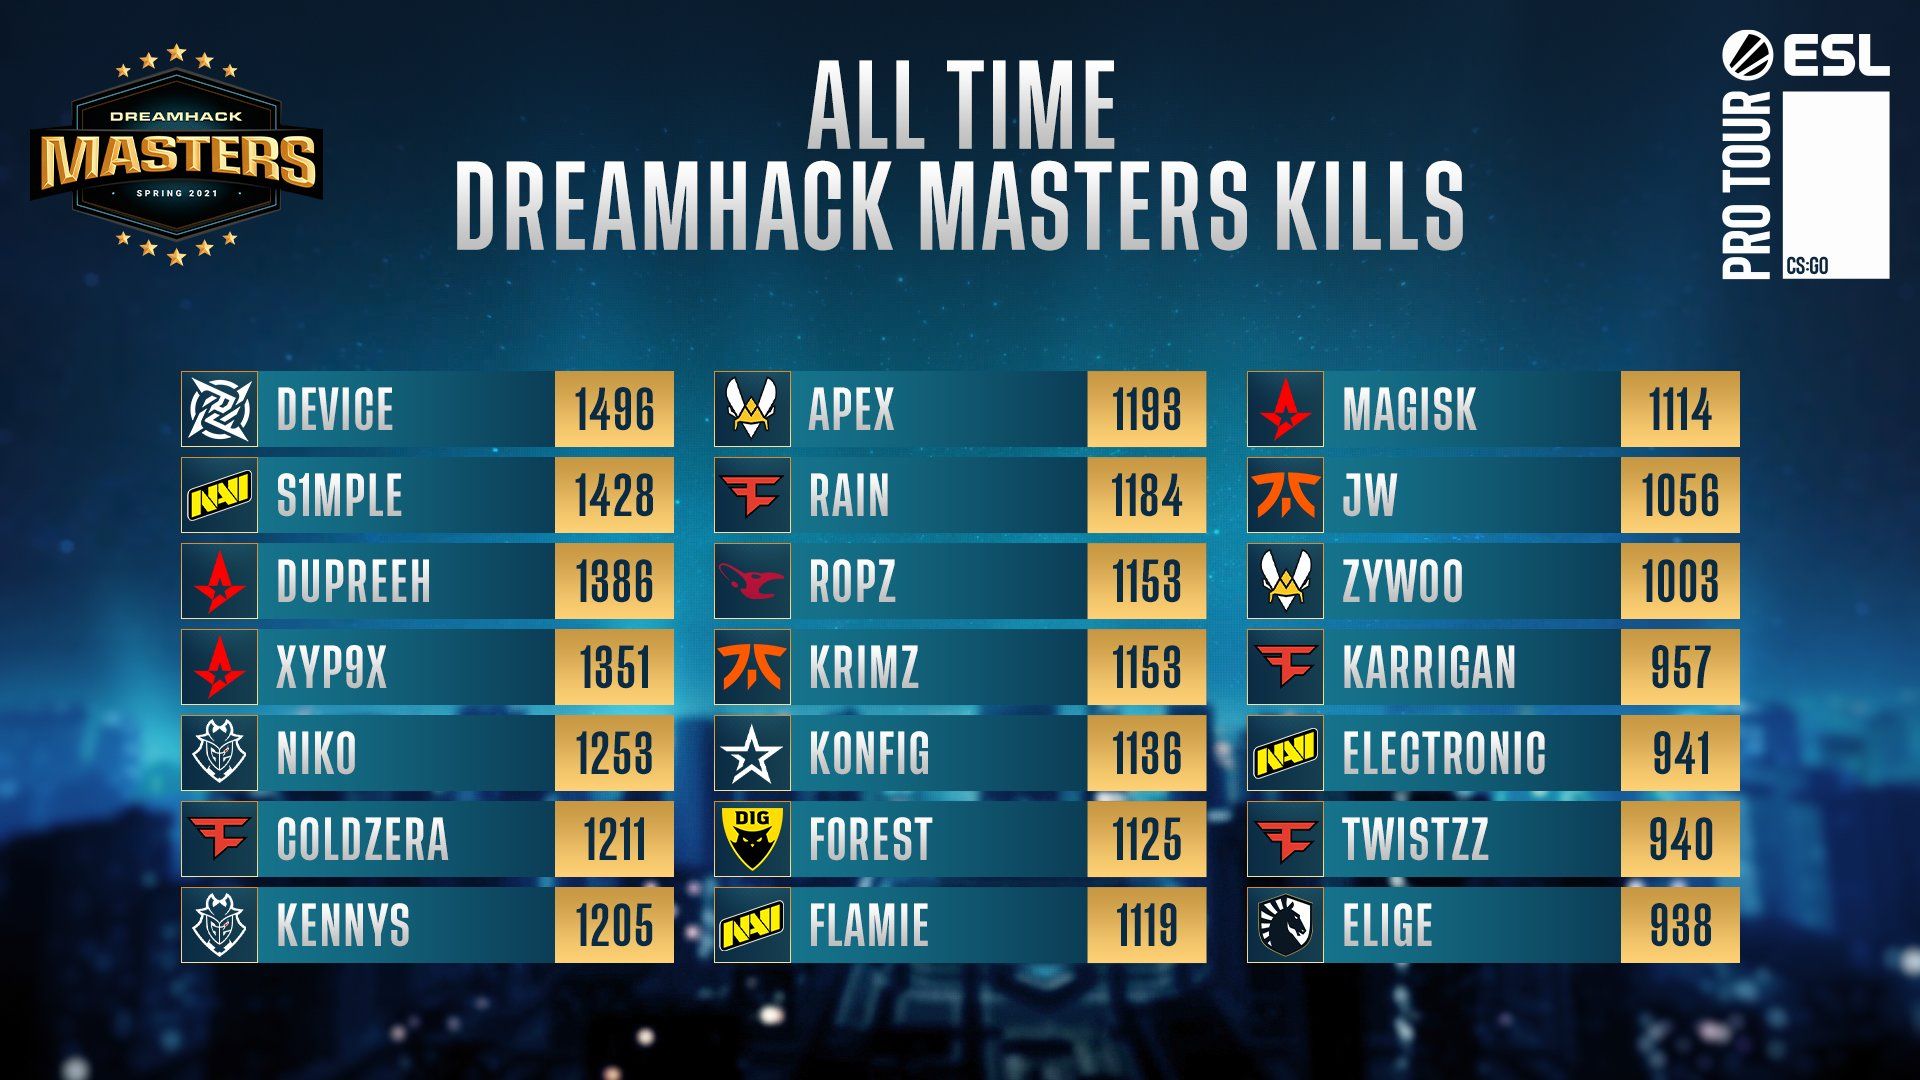 Игроки с наибольшим количеством фрагов на турнирах серии DreamHack Masters.
Источник: твиттер @DreamHackCSGO